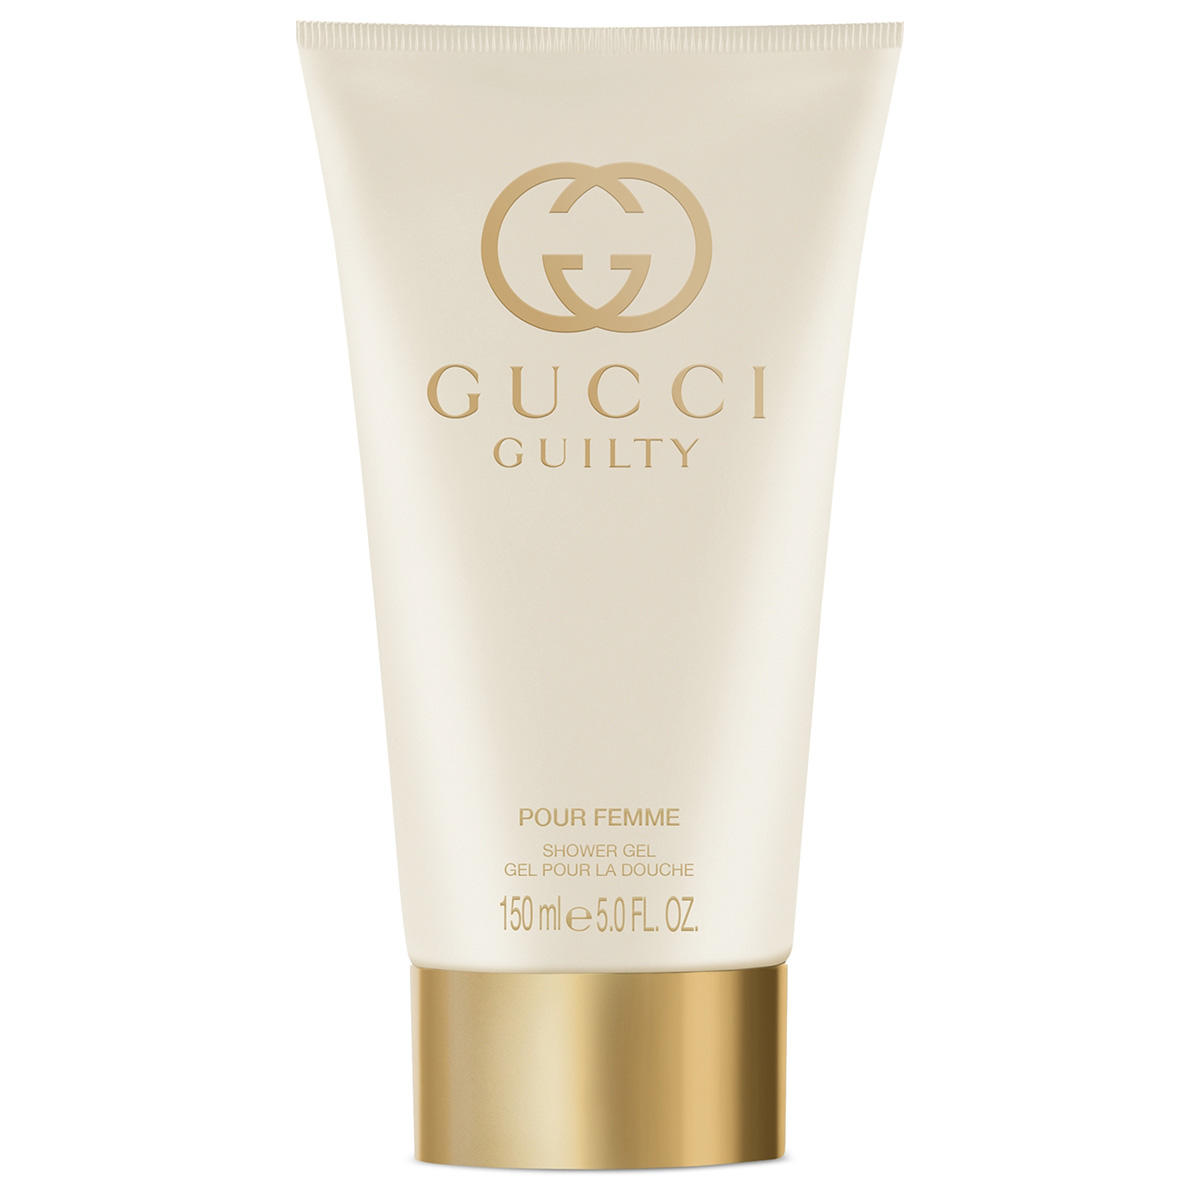 Gucci Guilty Pour Femme Shower Gel 150 ml - 1